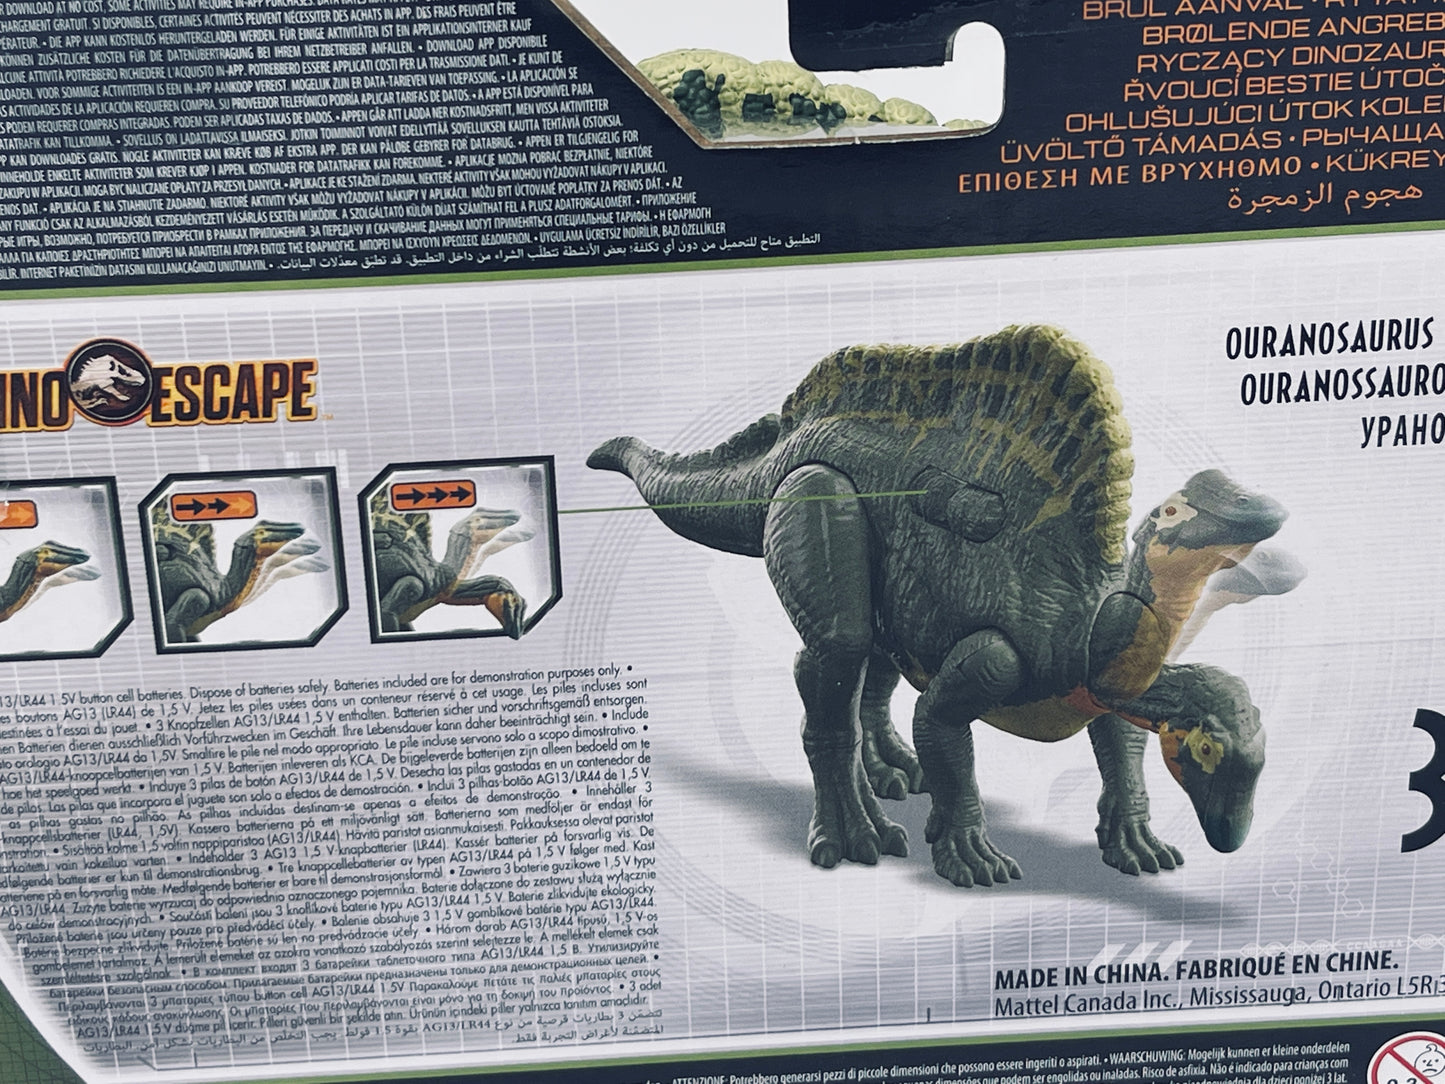 Jurassic World Camp Cretaceous - Ouranosaurus - Dino Escape Brüll Attacke (2021)